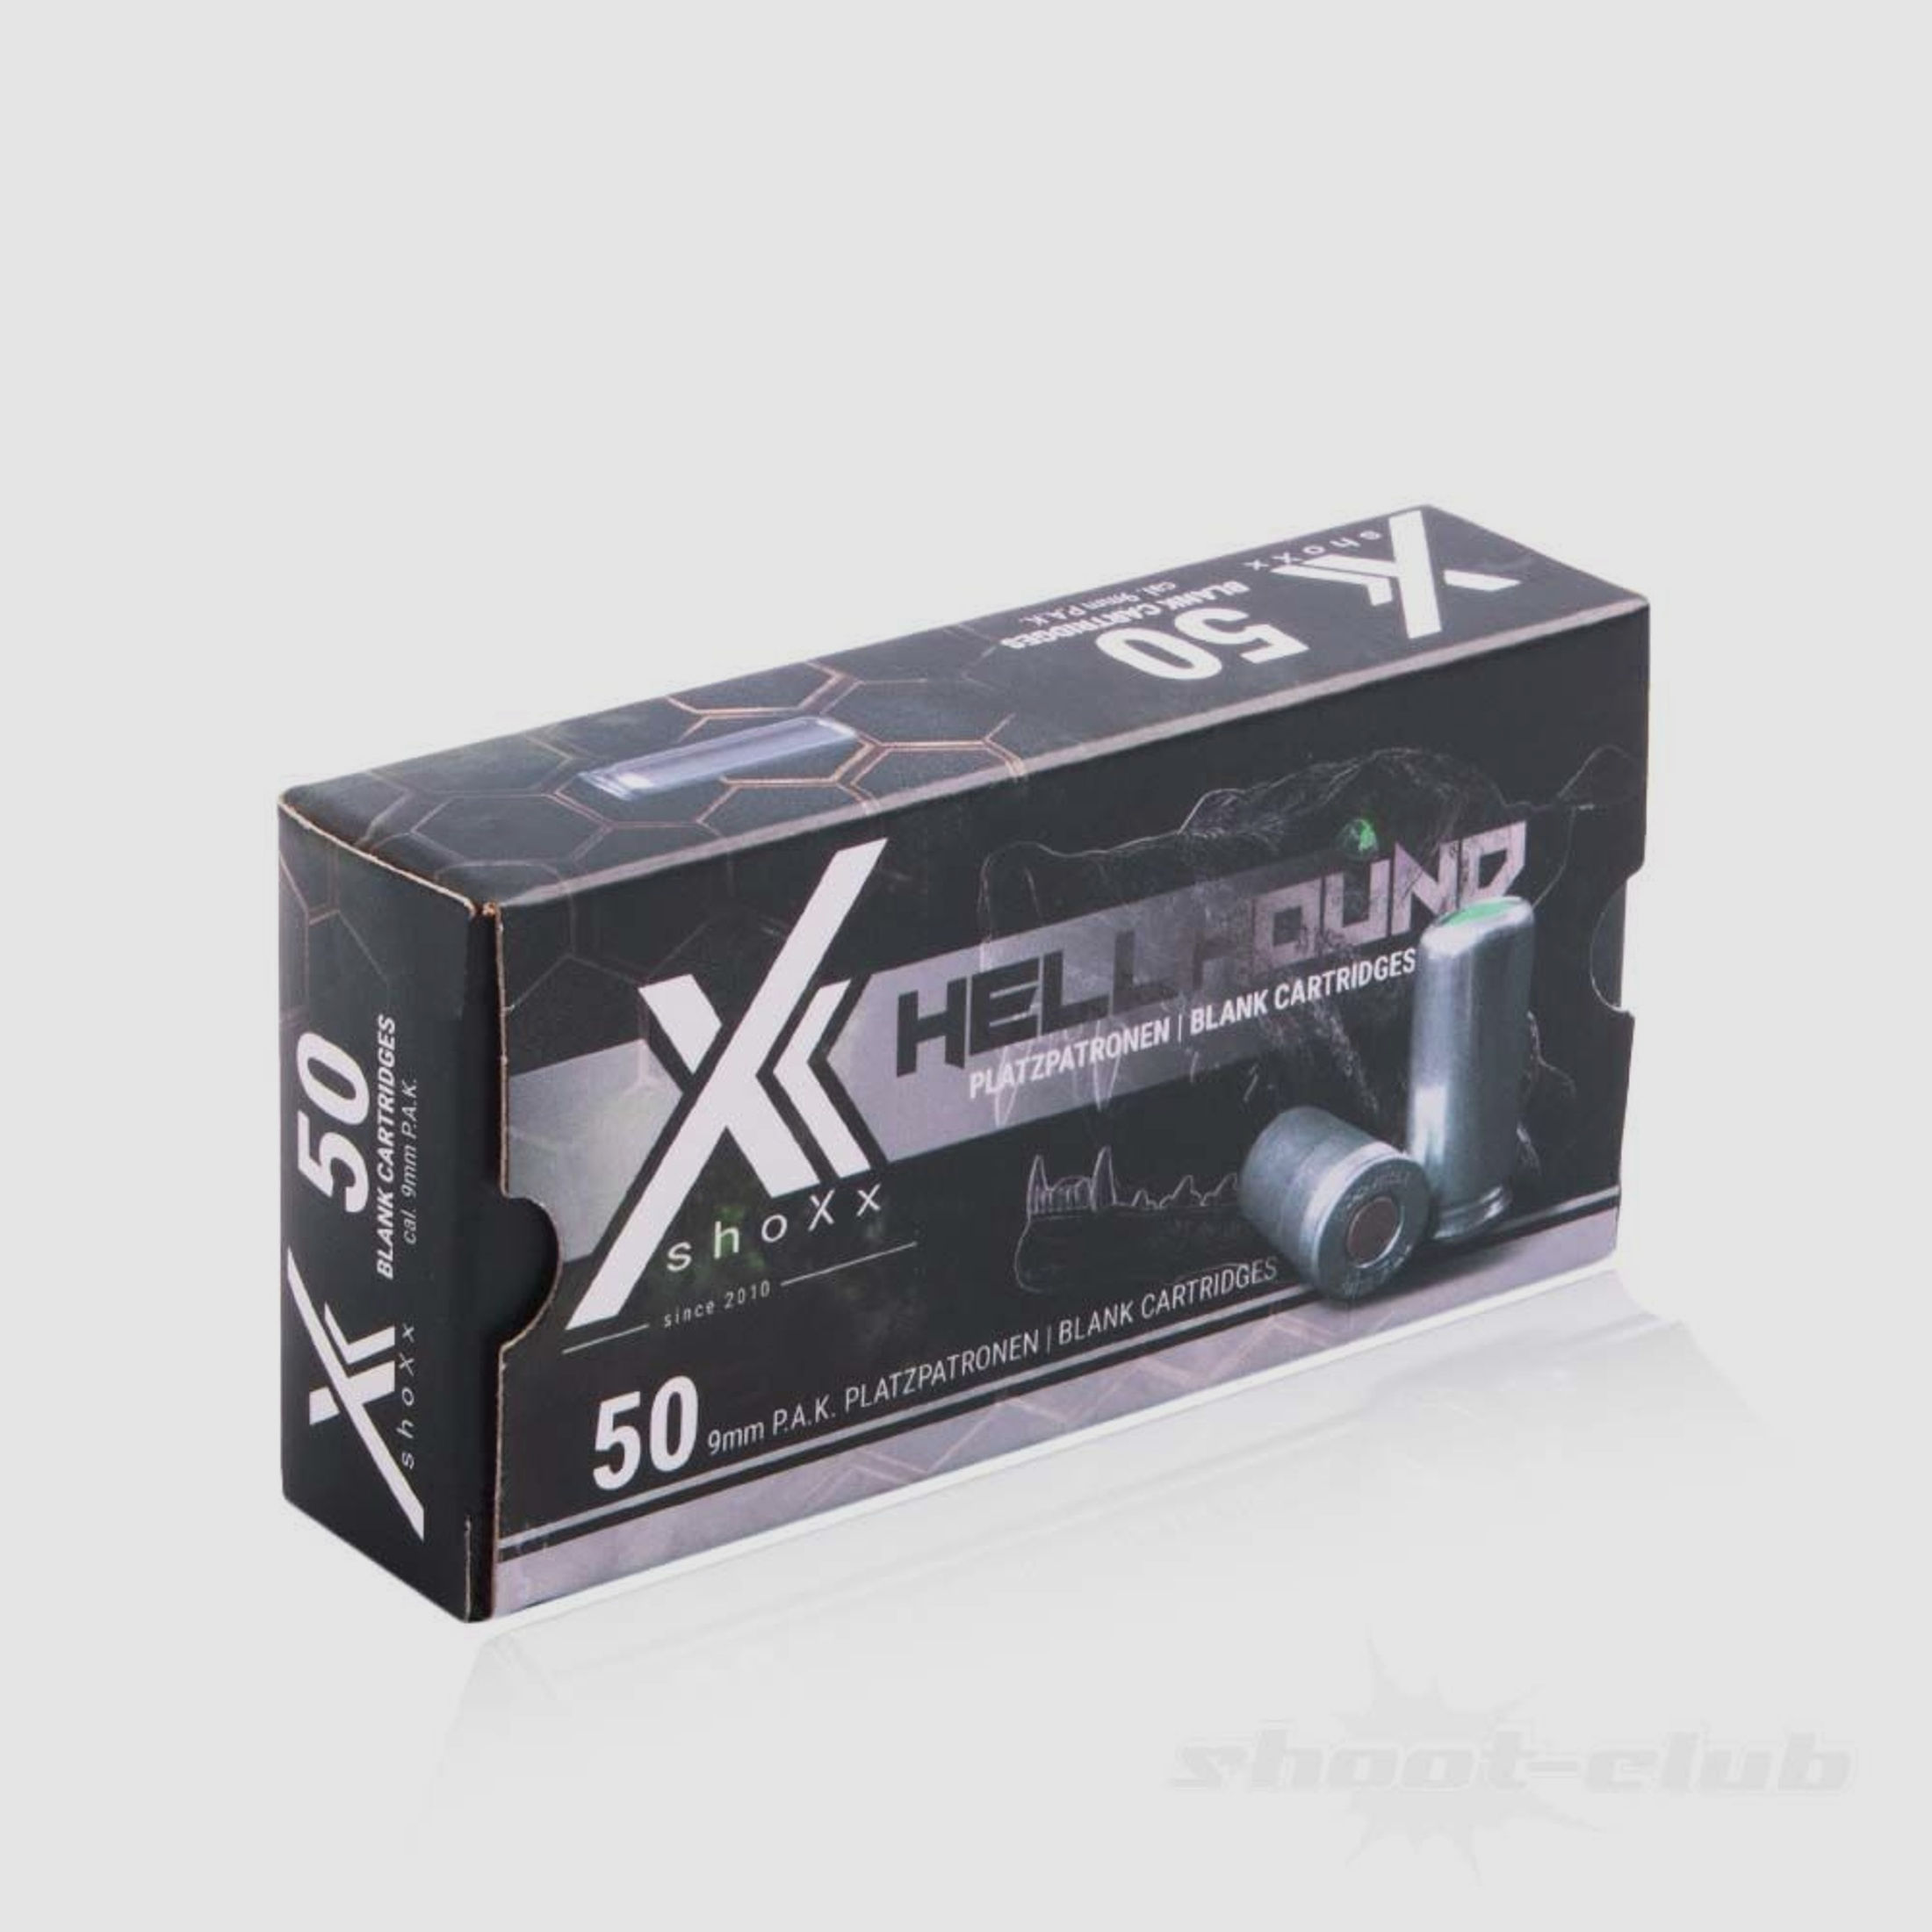 shoXx Hellhound Platzpatronen 9mm P.A.K 50 Stück